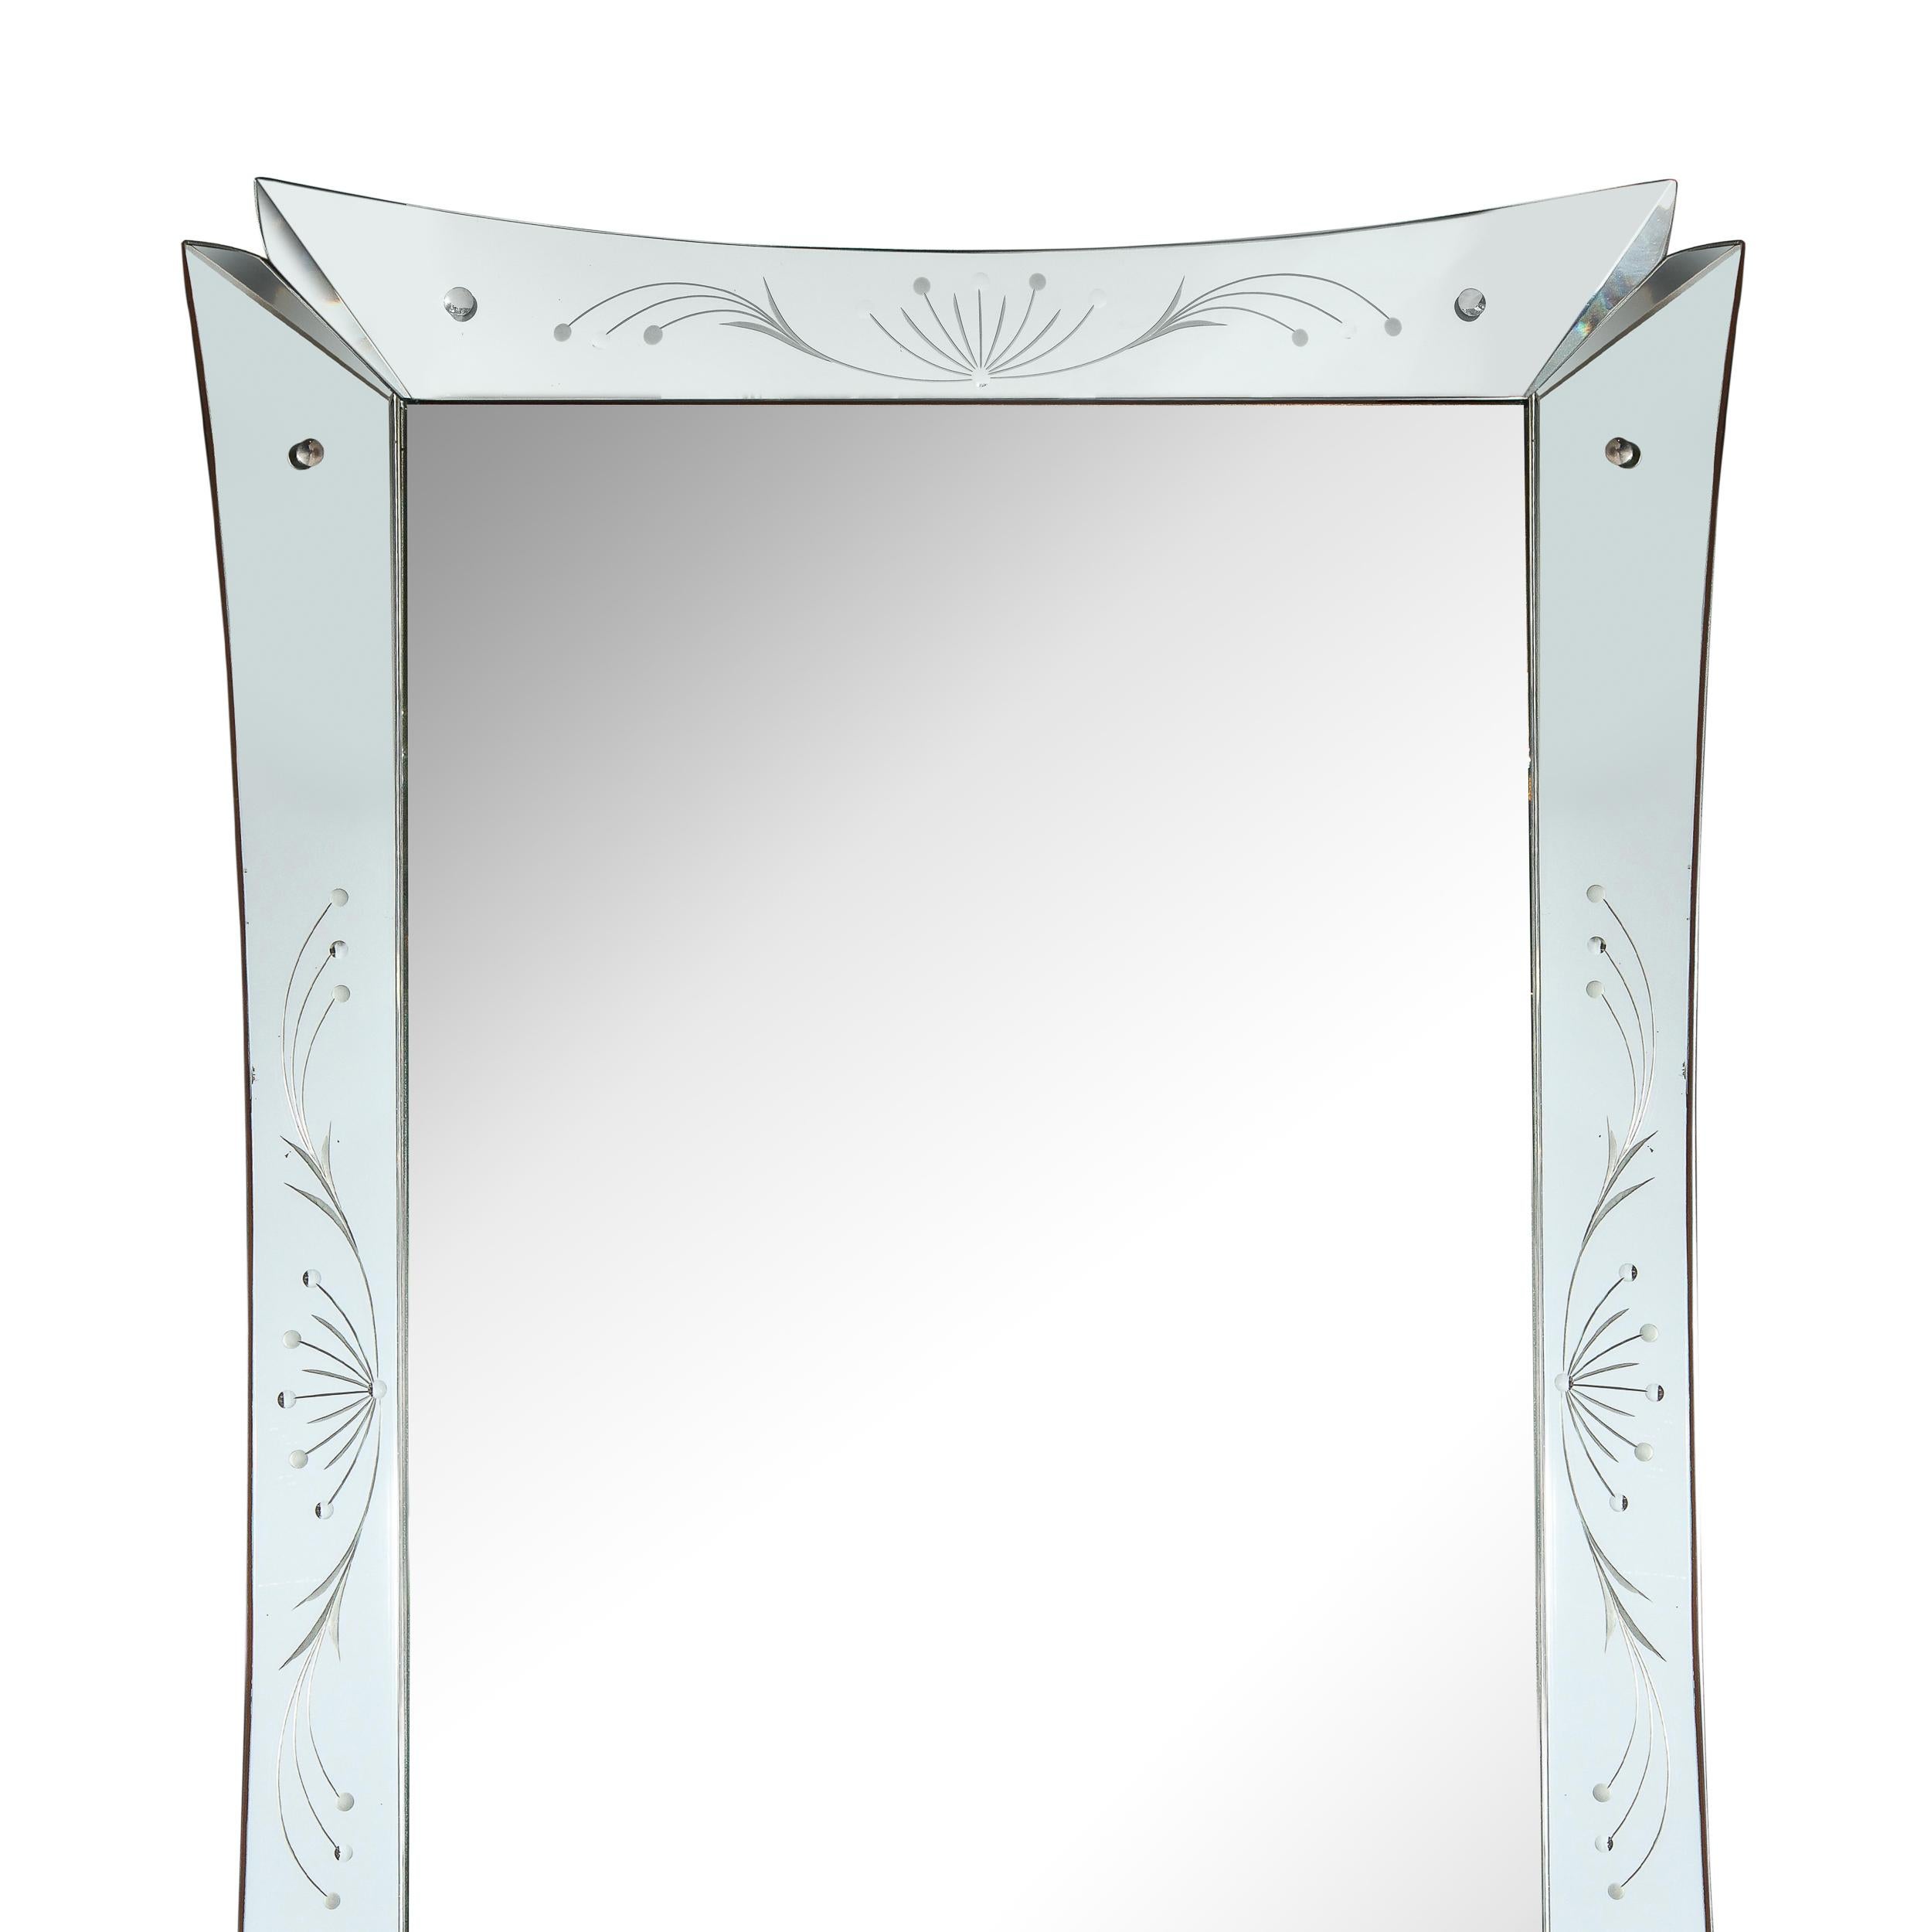 Dieser atemberaubende Mid-Century Modern Spiegel wurde um 1950 in den Vereinigten Staaten hergestellt. Auf jeder der vier Platten ist ein stilisiertes Blattmuster geätzt, das fließende, geschwungene Linien bietet, die von kreisförmigen Formen